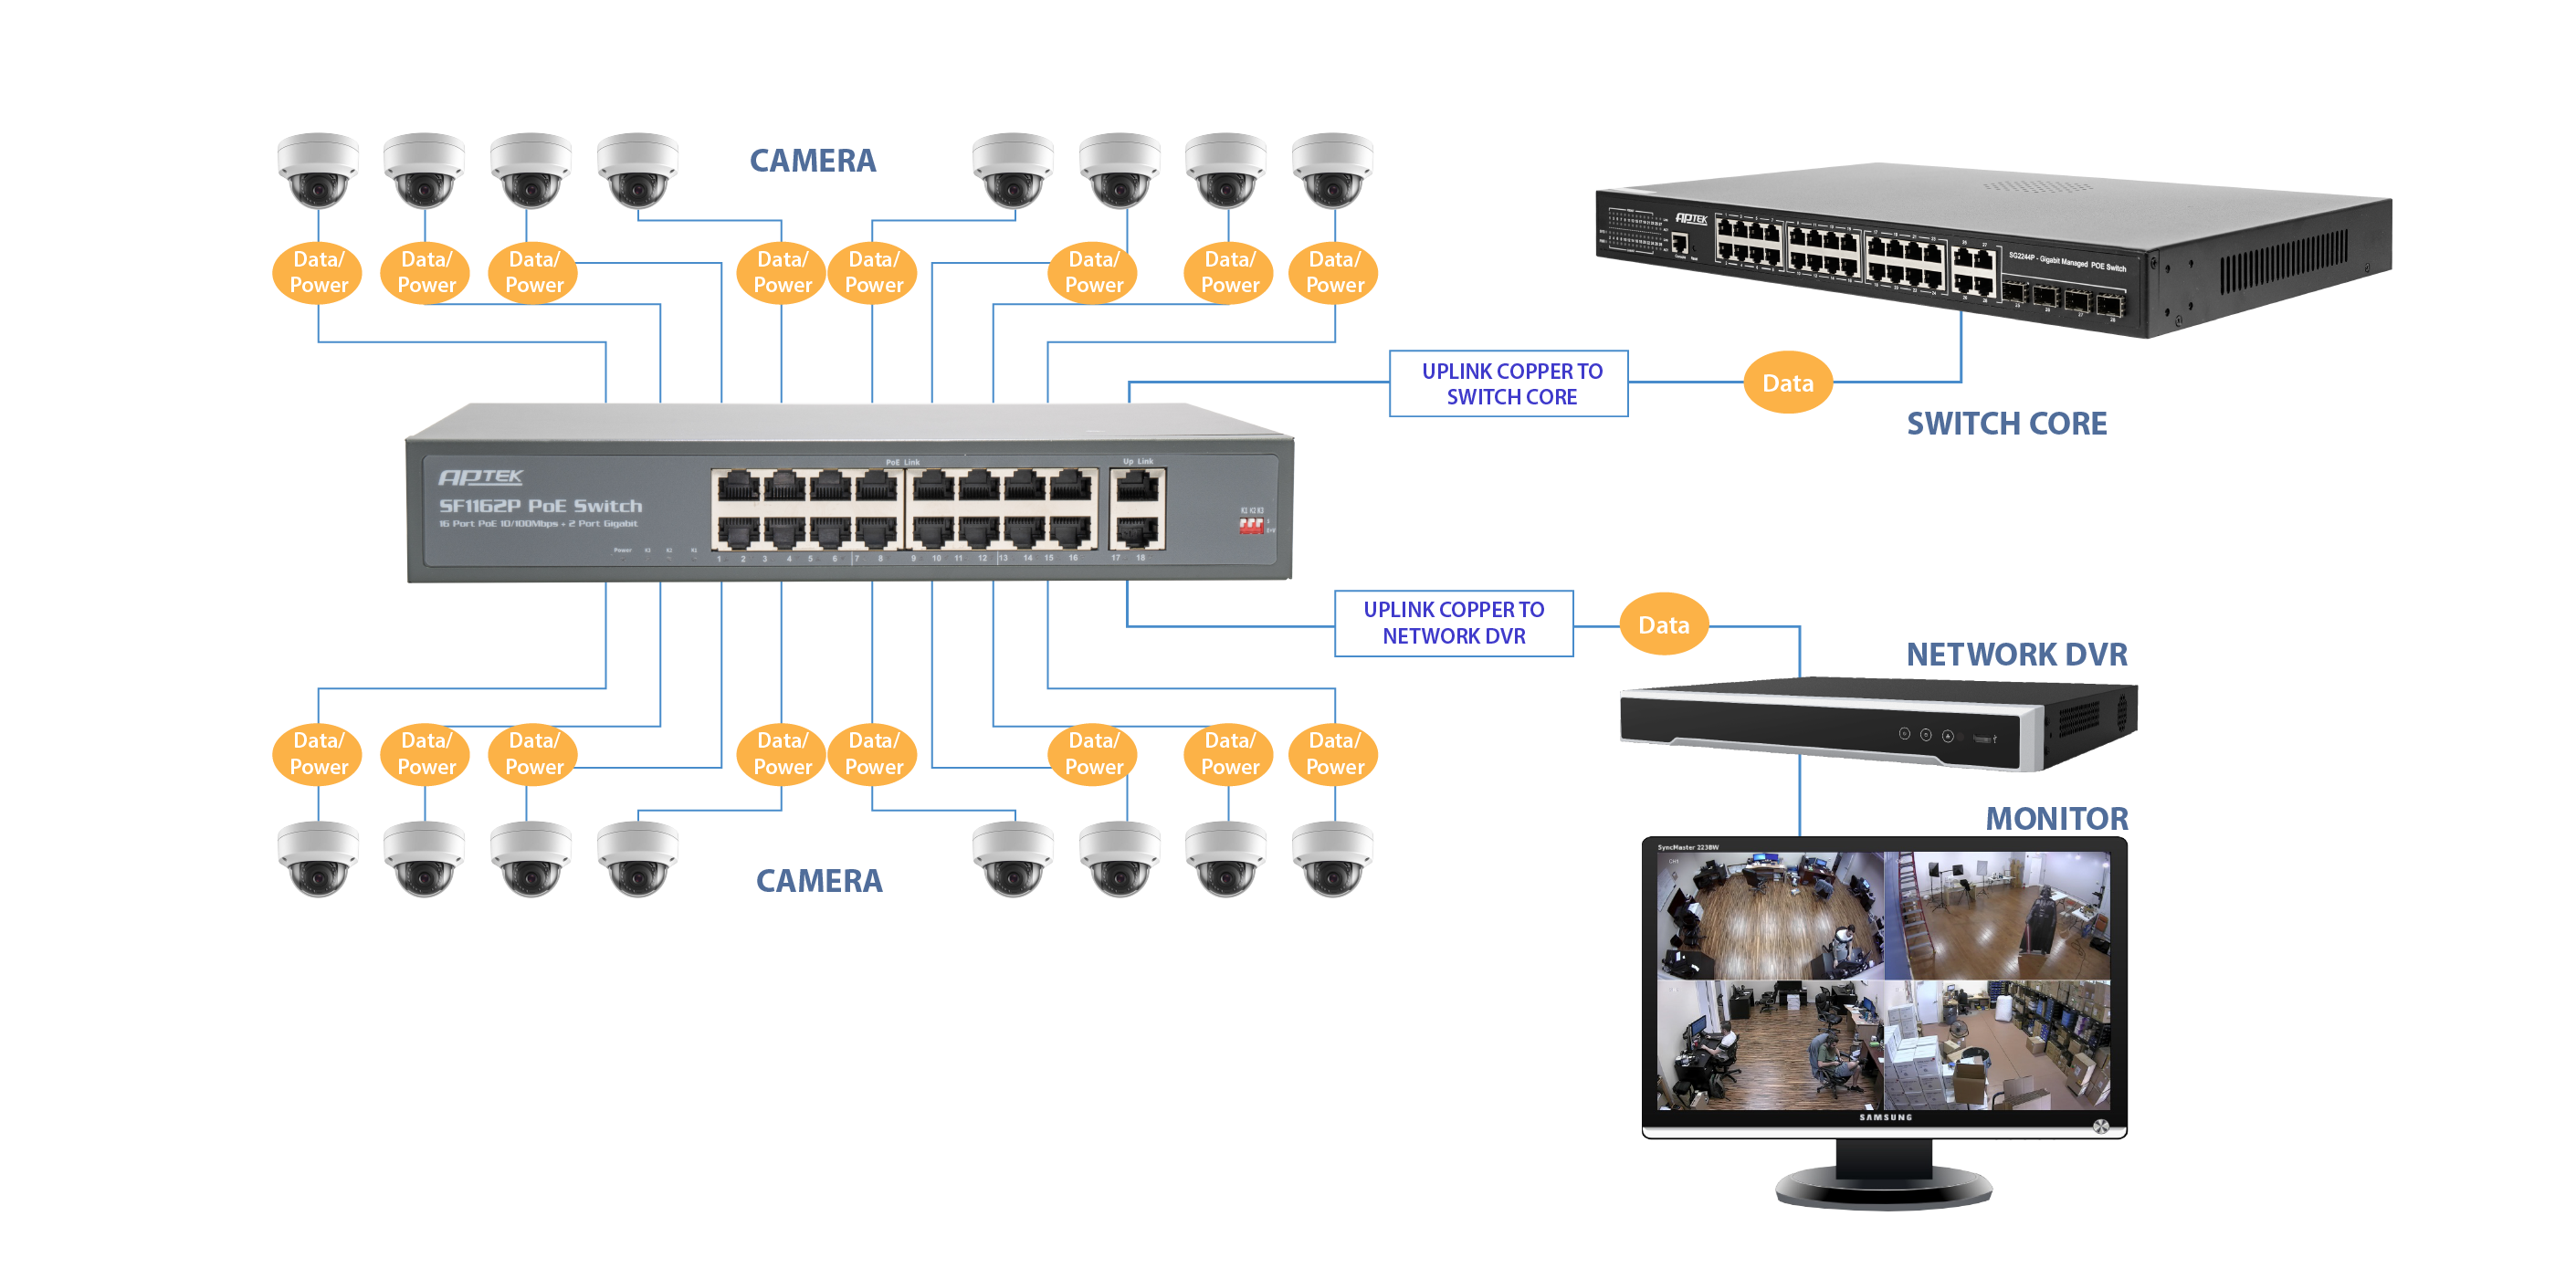 Switch mạng POE 16 port  khoảng cách 250m APTEK SF1162P hỗ trợ Watch-dog